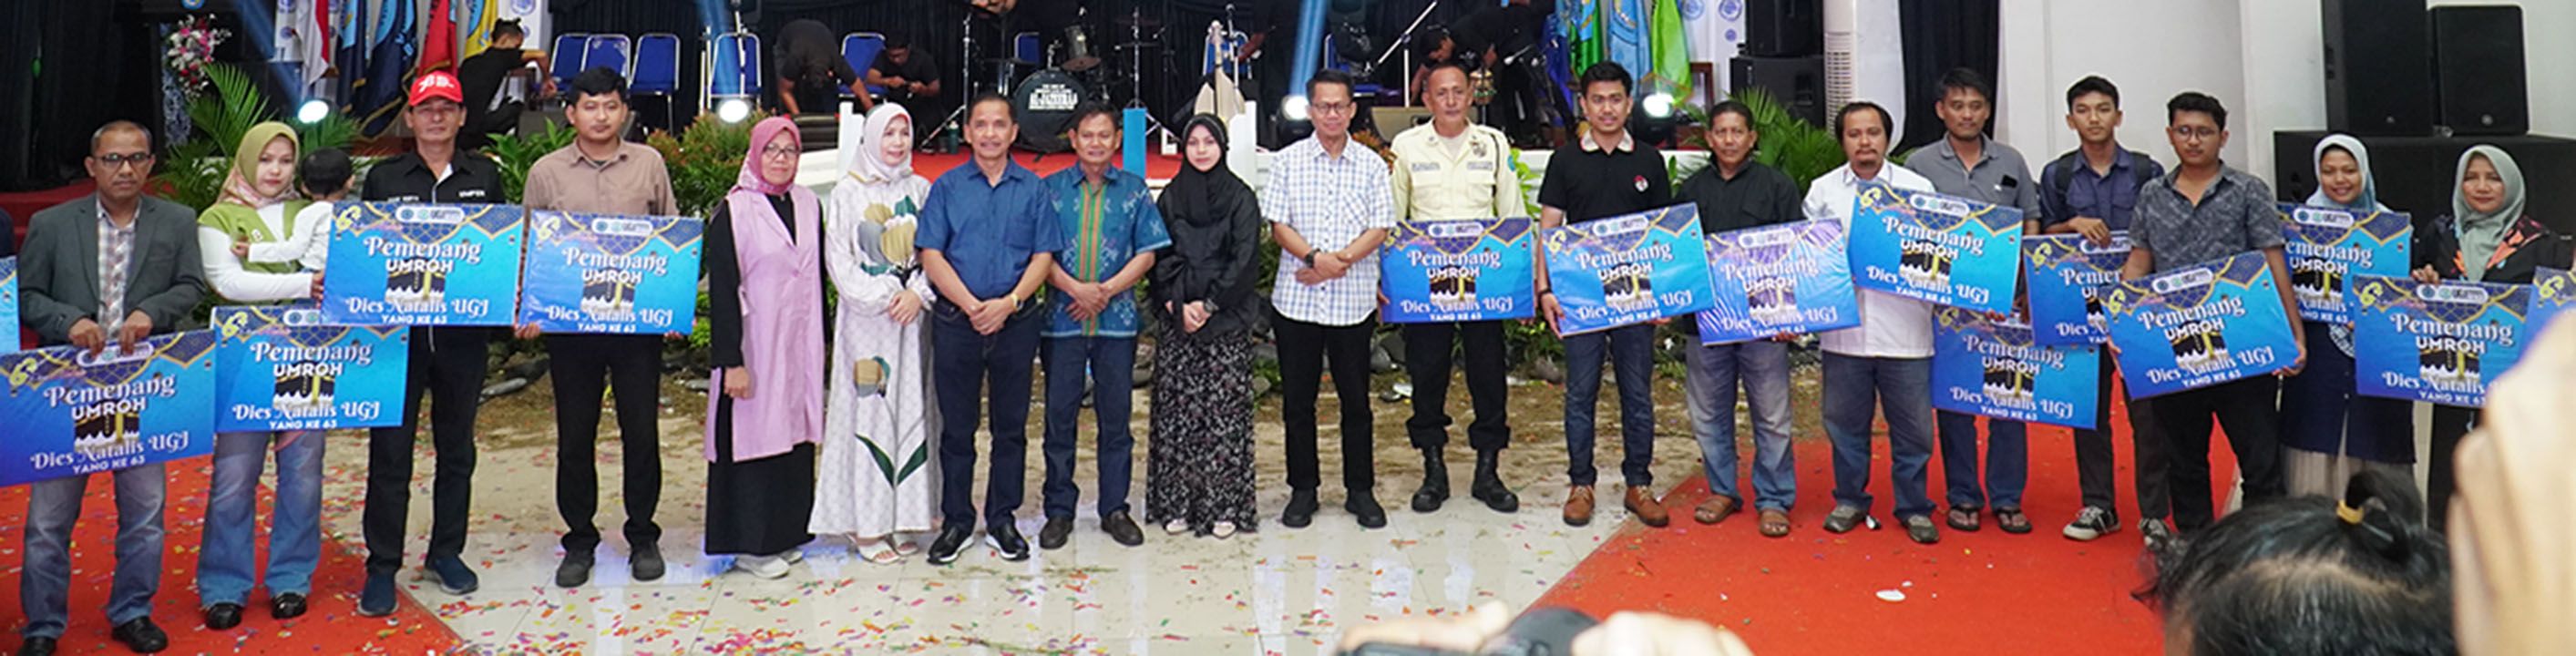 Para pemenang undian umroh UGJ Cirebon saat foto bersama.*